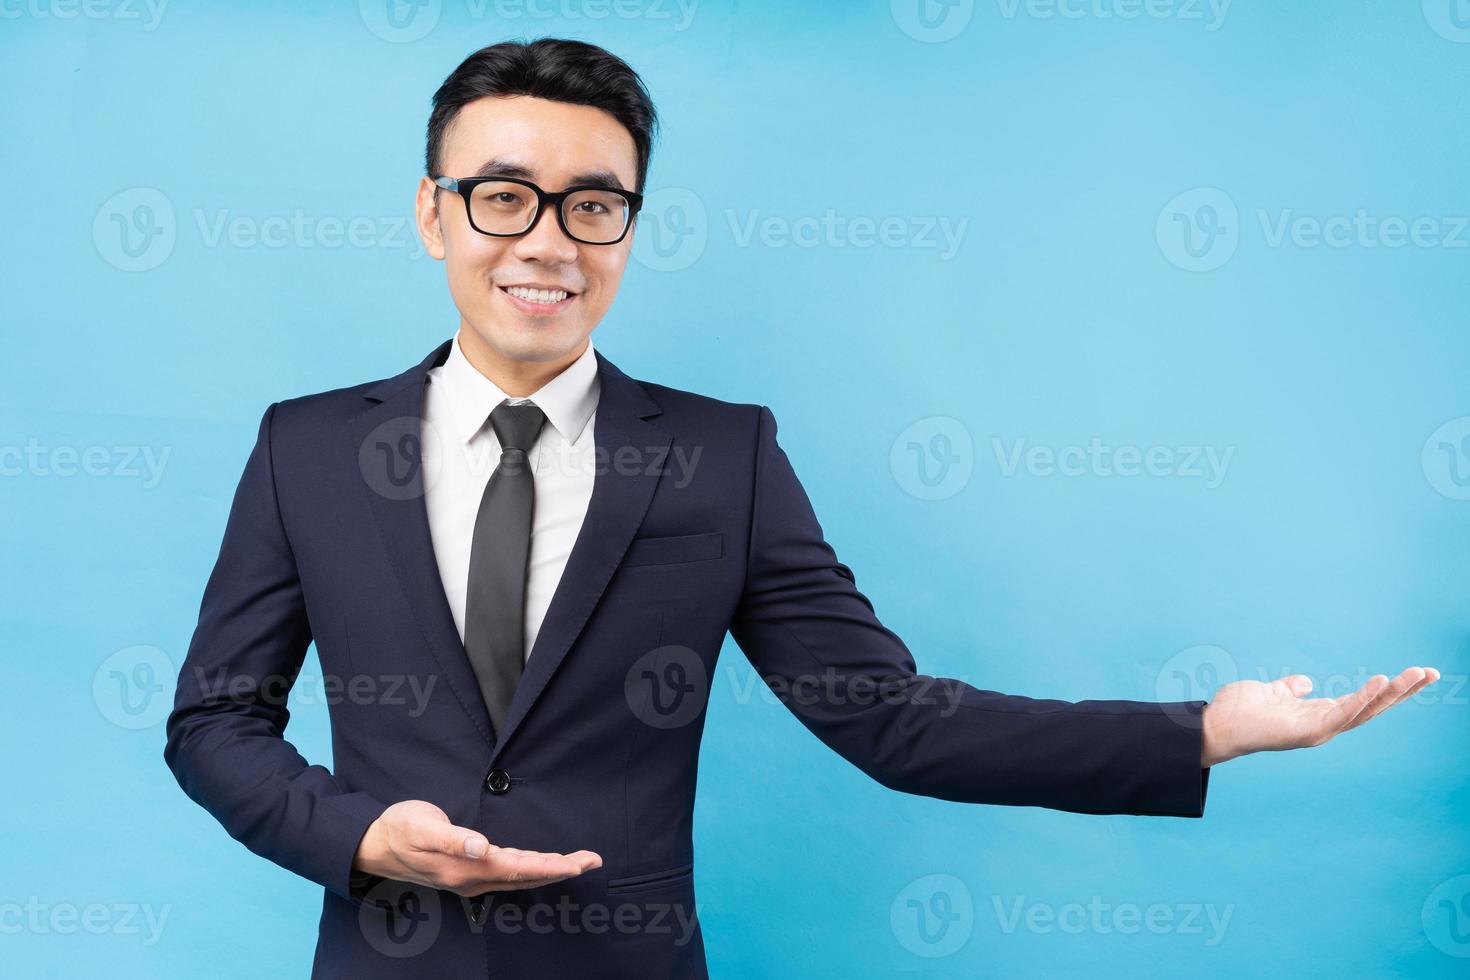 porträtt av asiatisk affärsman bär kostym på blå bakgrund foto